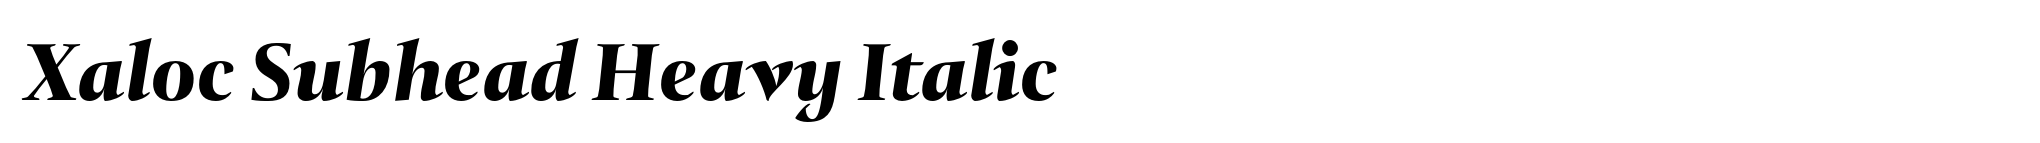 Xaloc Subhead Heavy Italic image